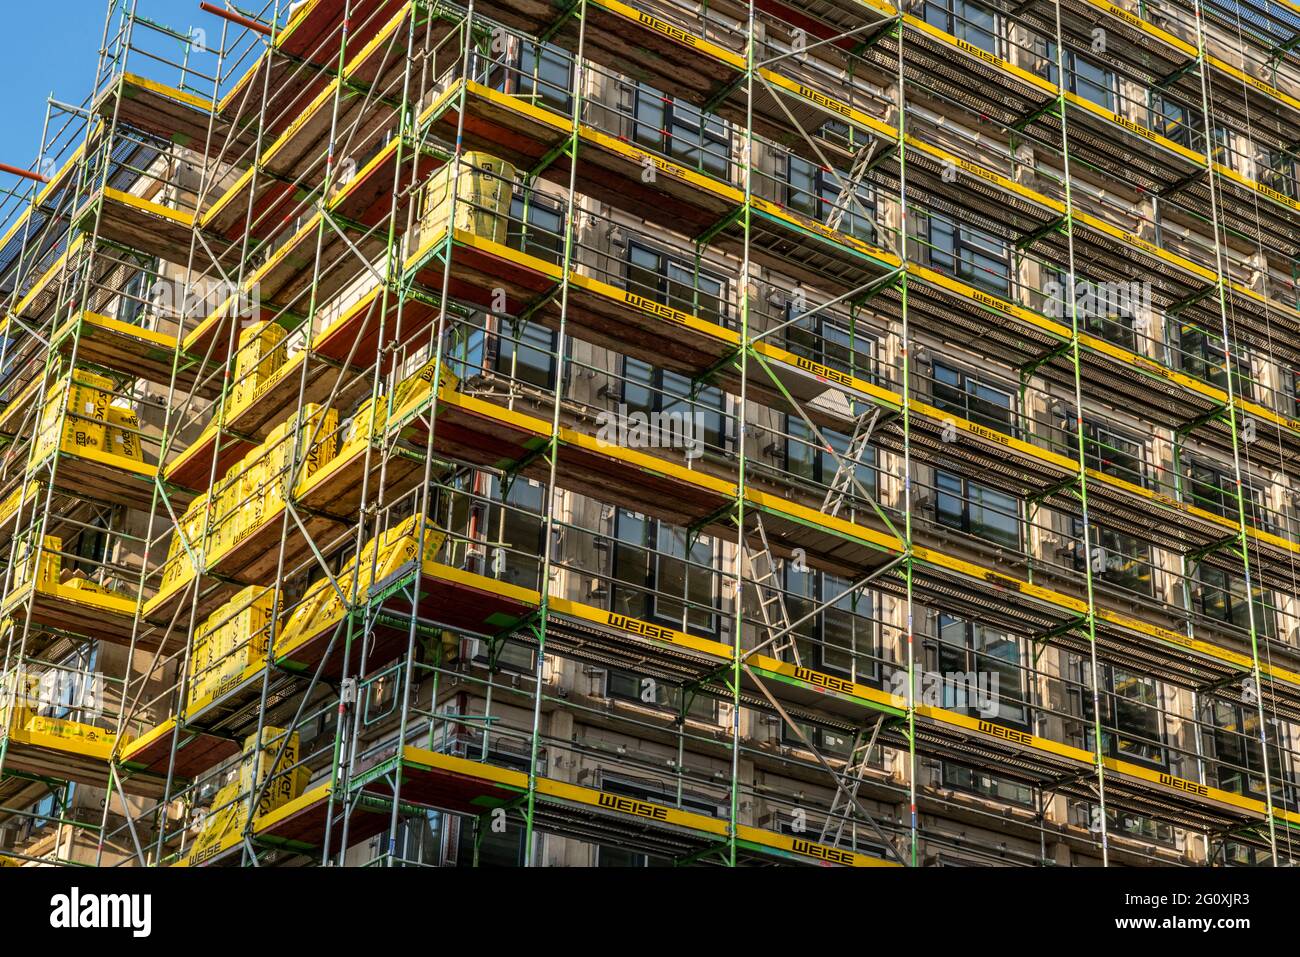 Baustelle eines großen Bauprojekts an der Huyssenallee in Essen, Huyssen Quartier, Wohnhochhaus mit 19 Etagen ein Bürogebäude mit 5 Etagen, eingerüste Stock Photo